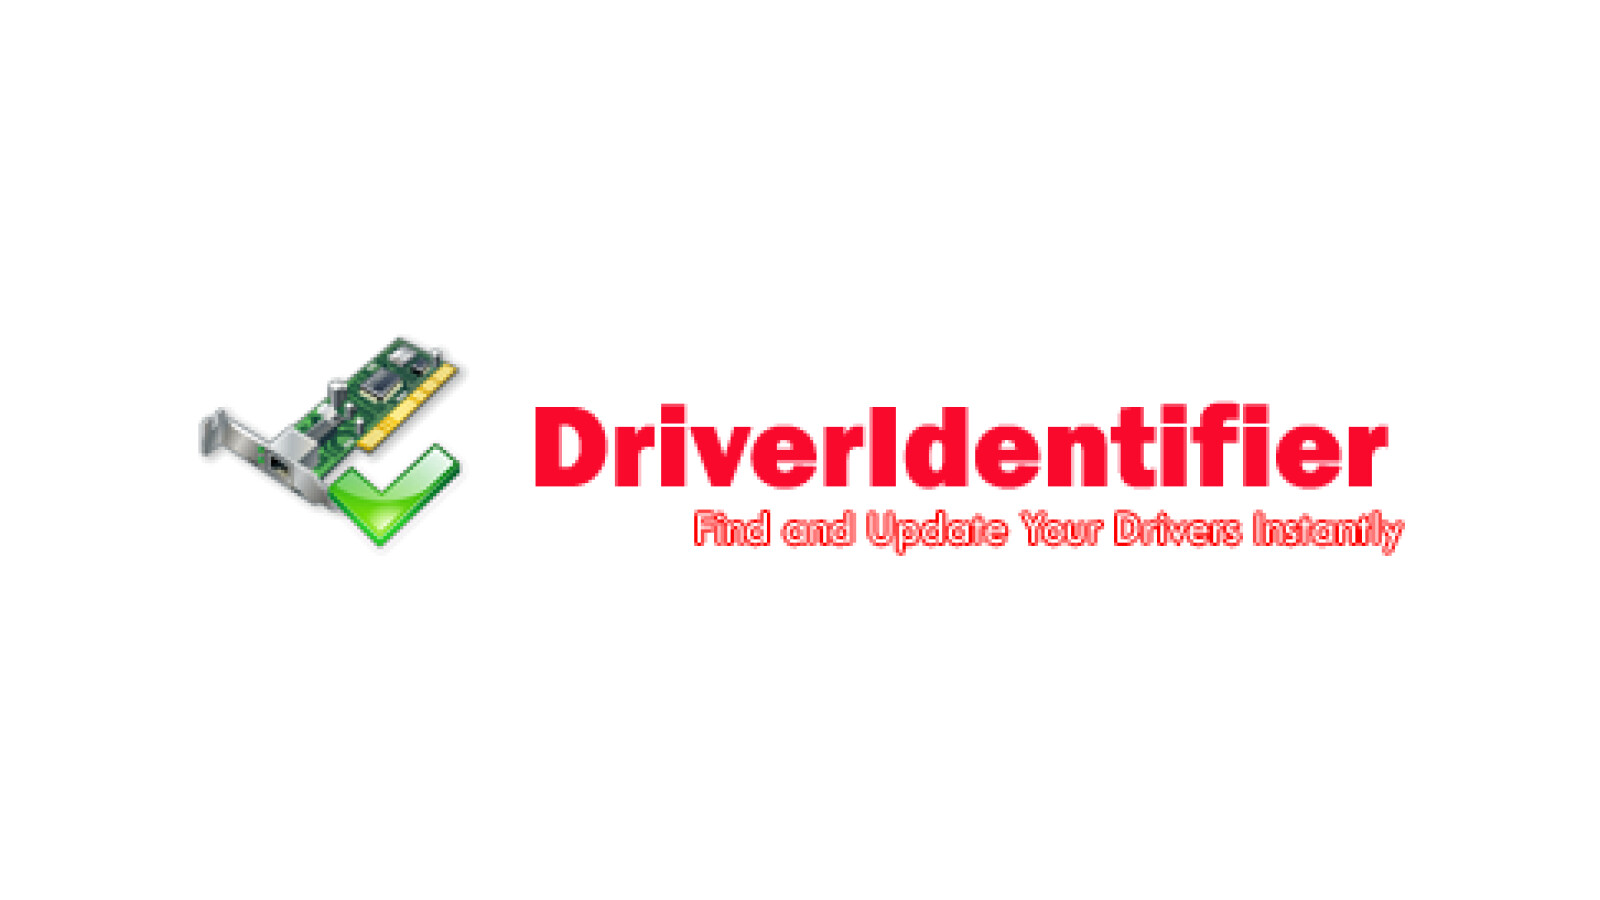 driveridentifier 4.2.8